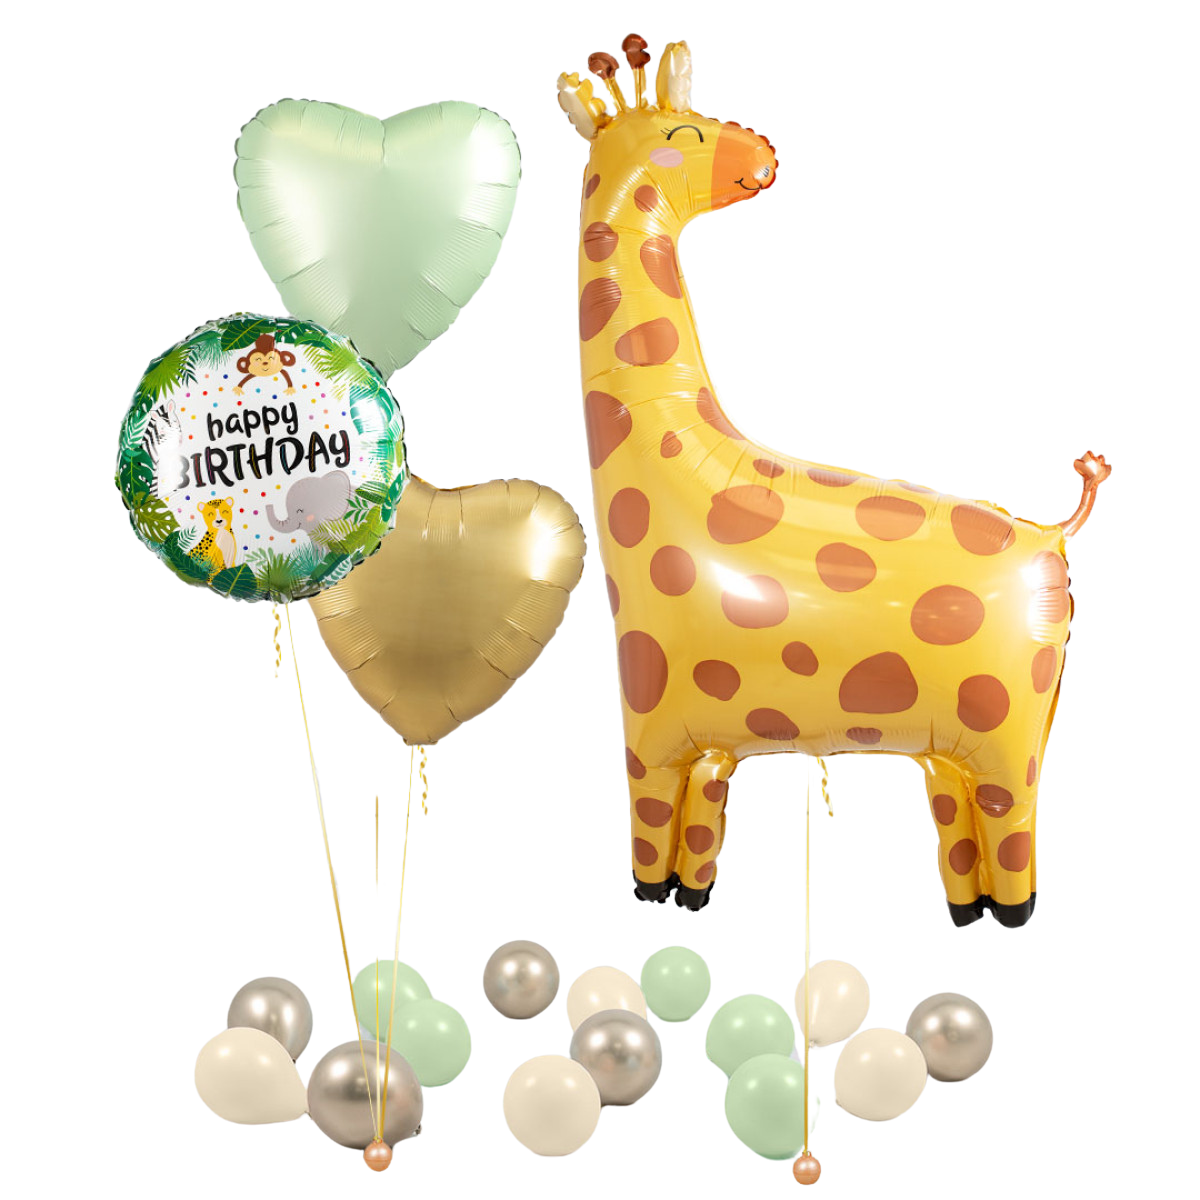 Bubblegum Balloons Giraffe Balloon Package